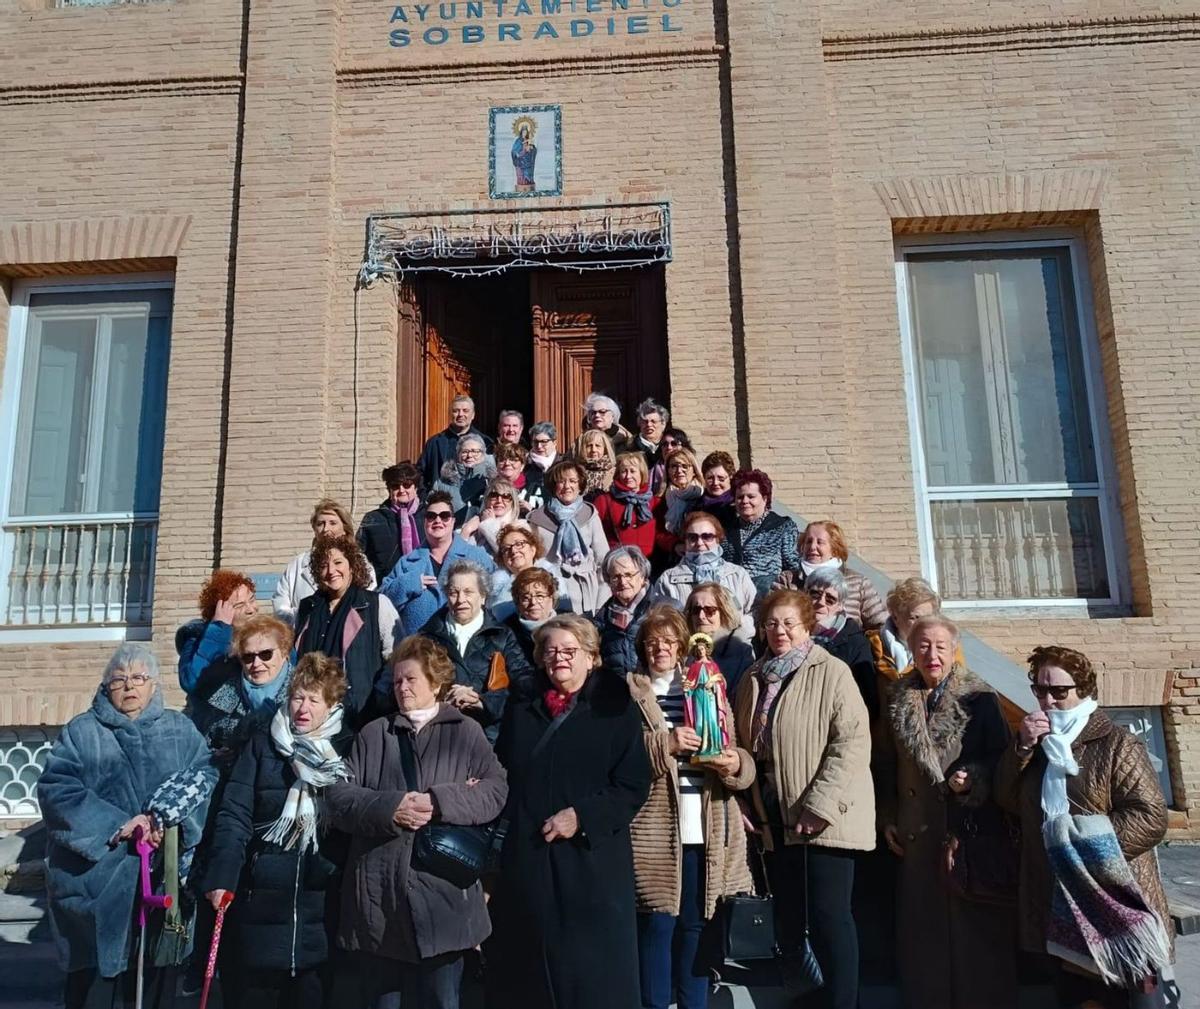 Las mujeres de Sobradiel se fotografiaron a las puertas del ayuntamiento.  |